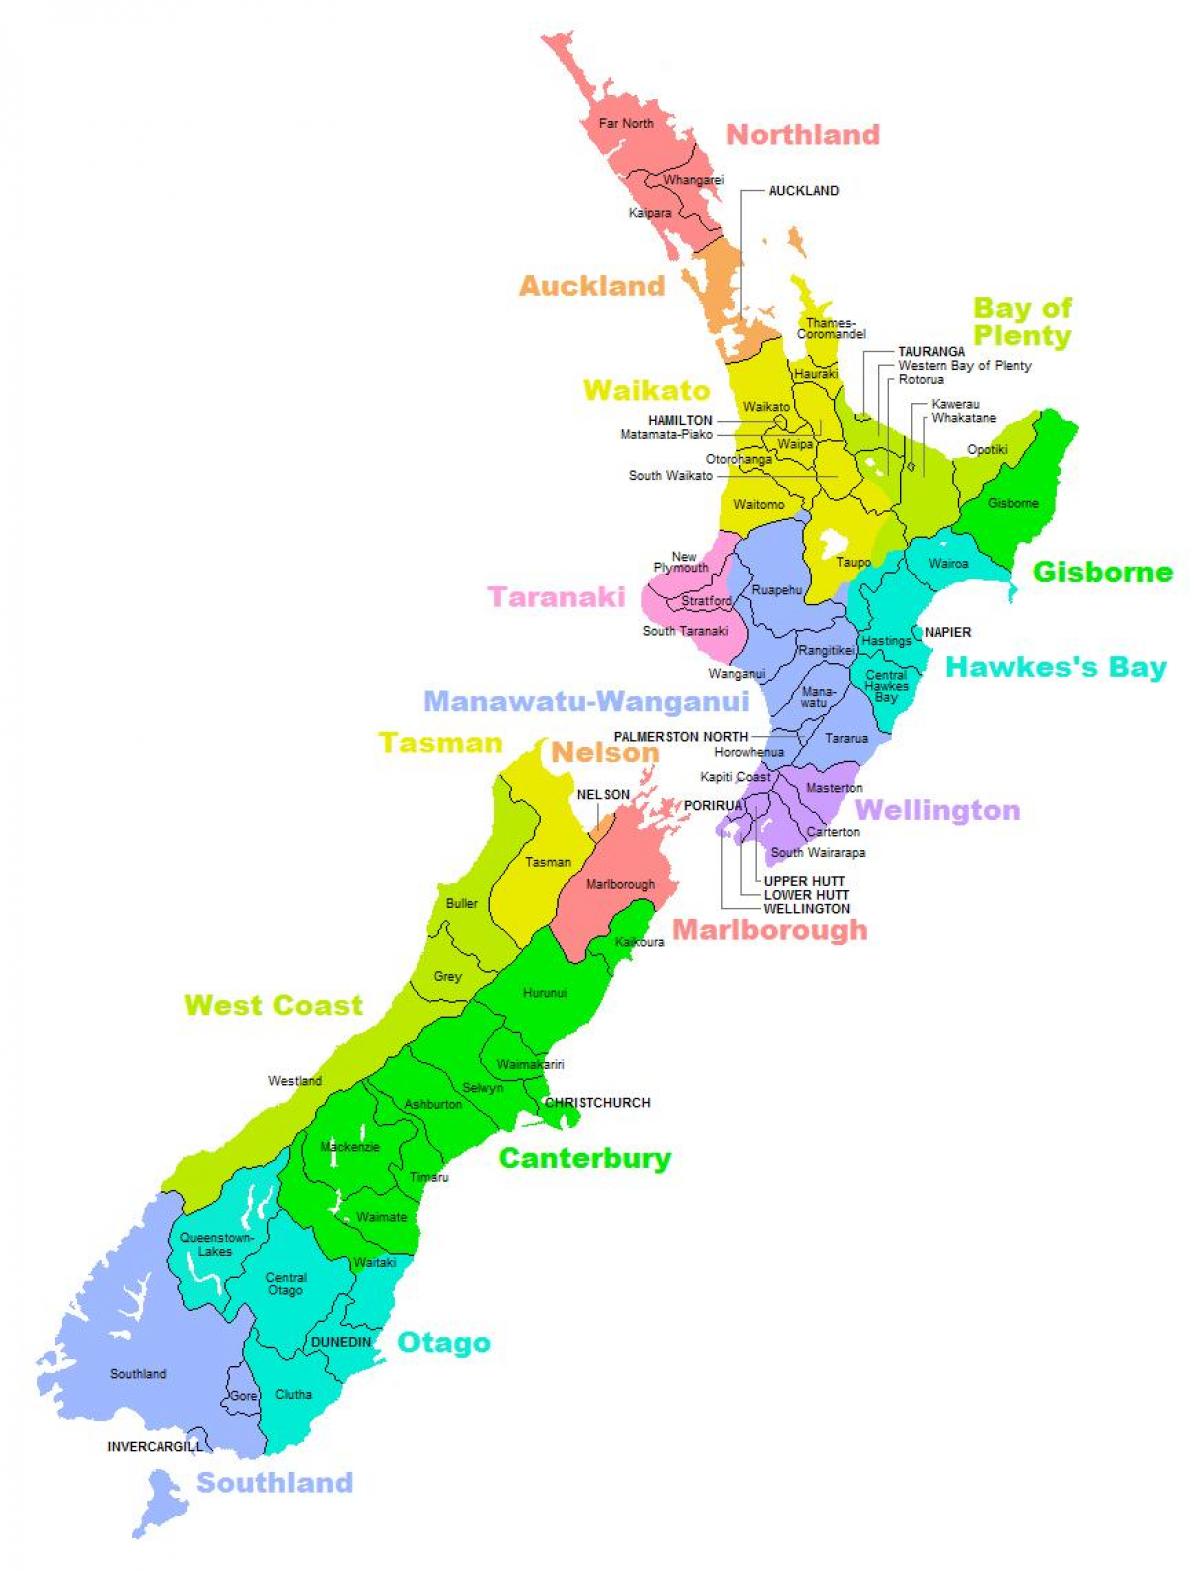 nový zéland, okres mapu